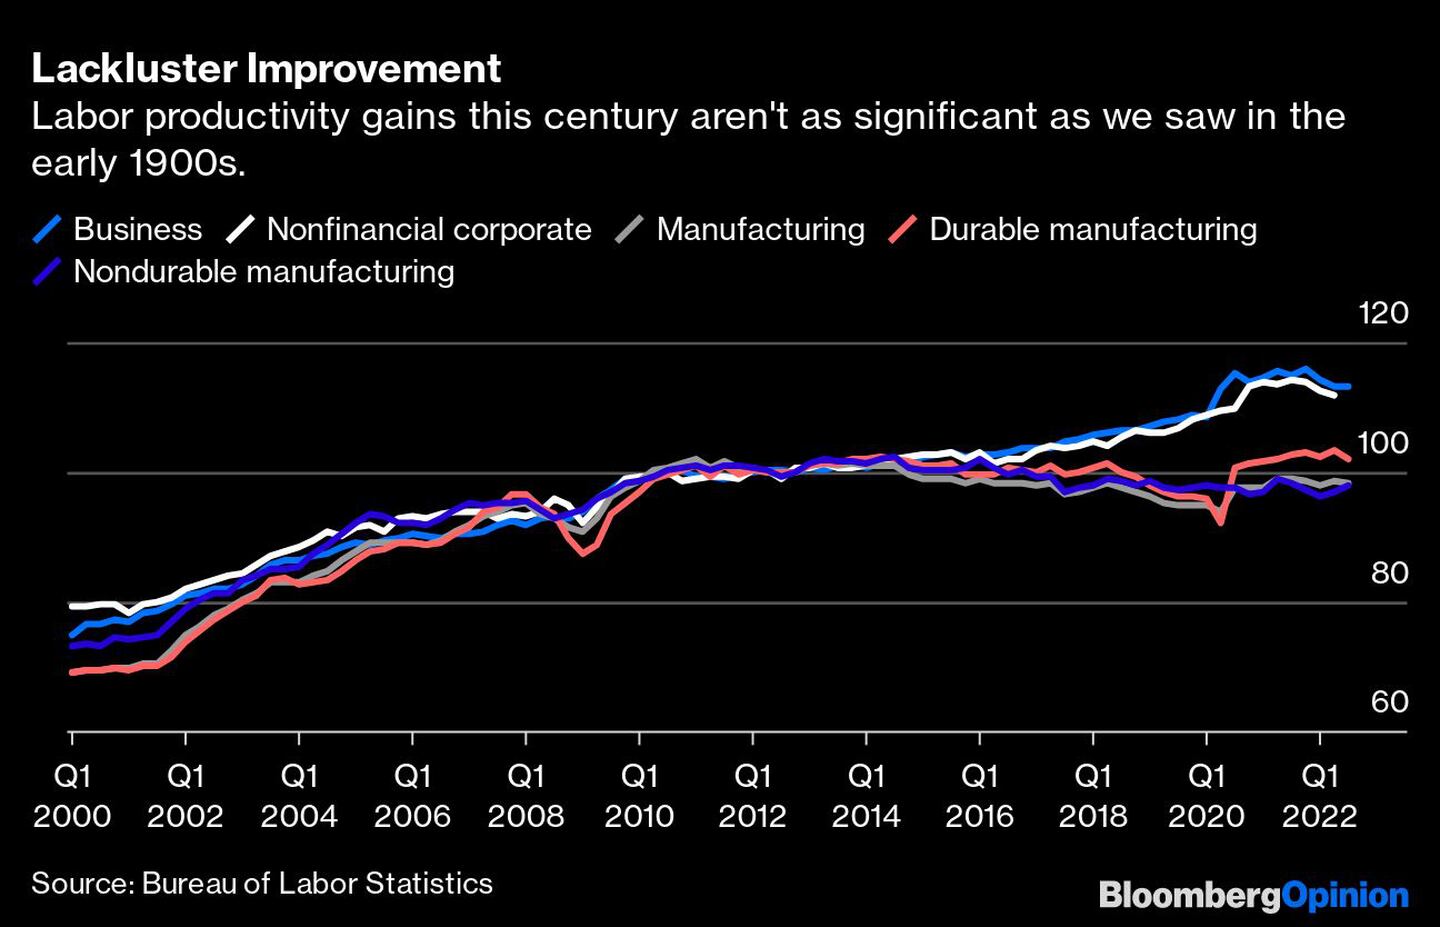  El aumento de la productividad laboral en este siglo no es tan significativo como el de principios del siglo XX.dfd